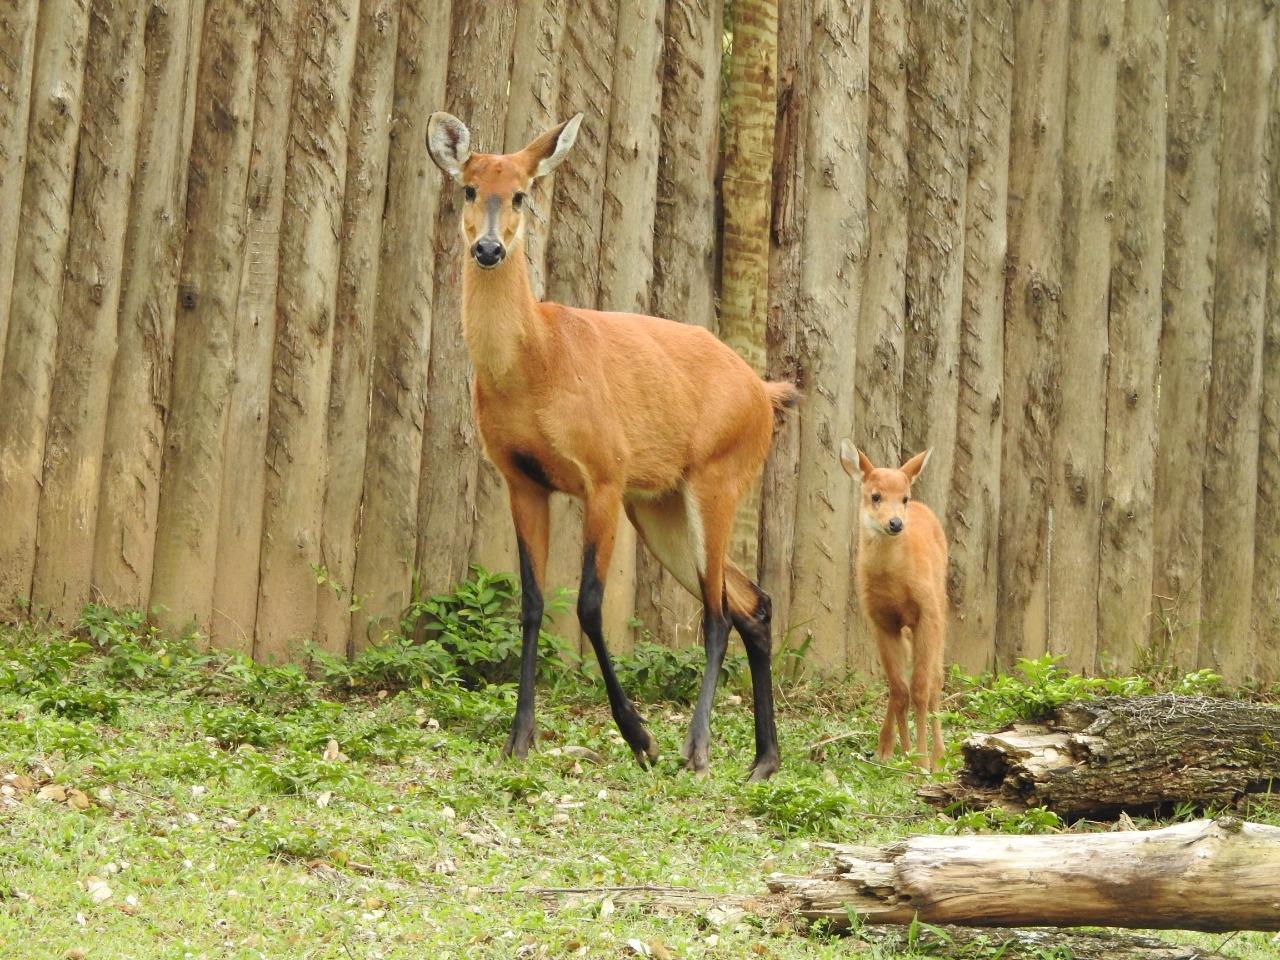 Zooparque Itatiba registra nascimento de cervo-do-pantanal